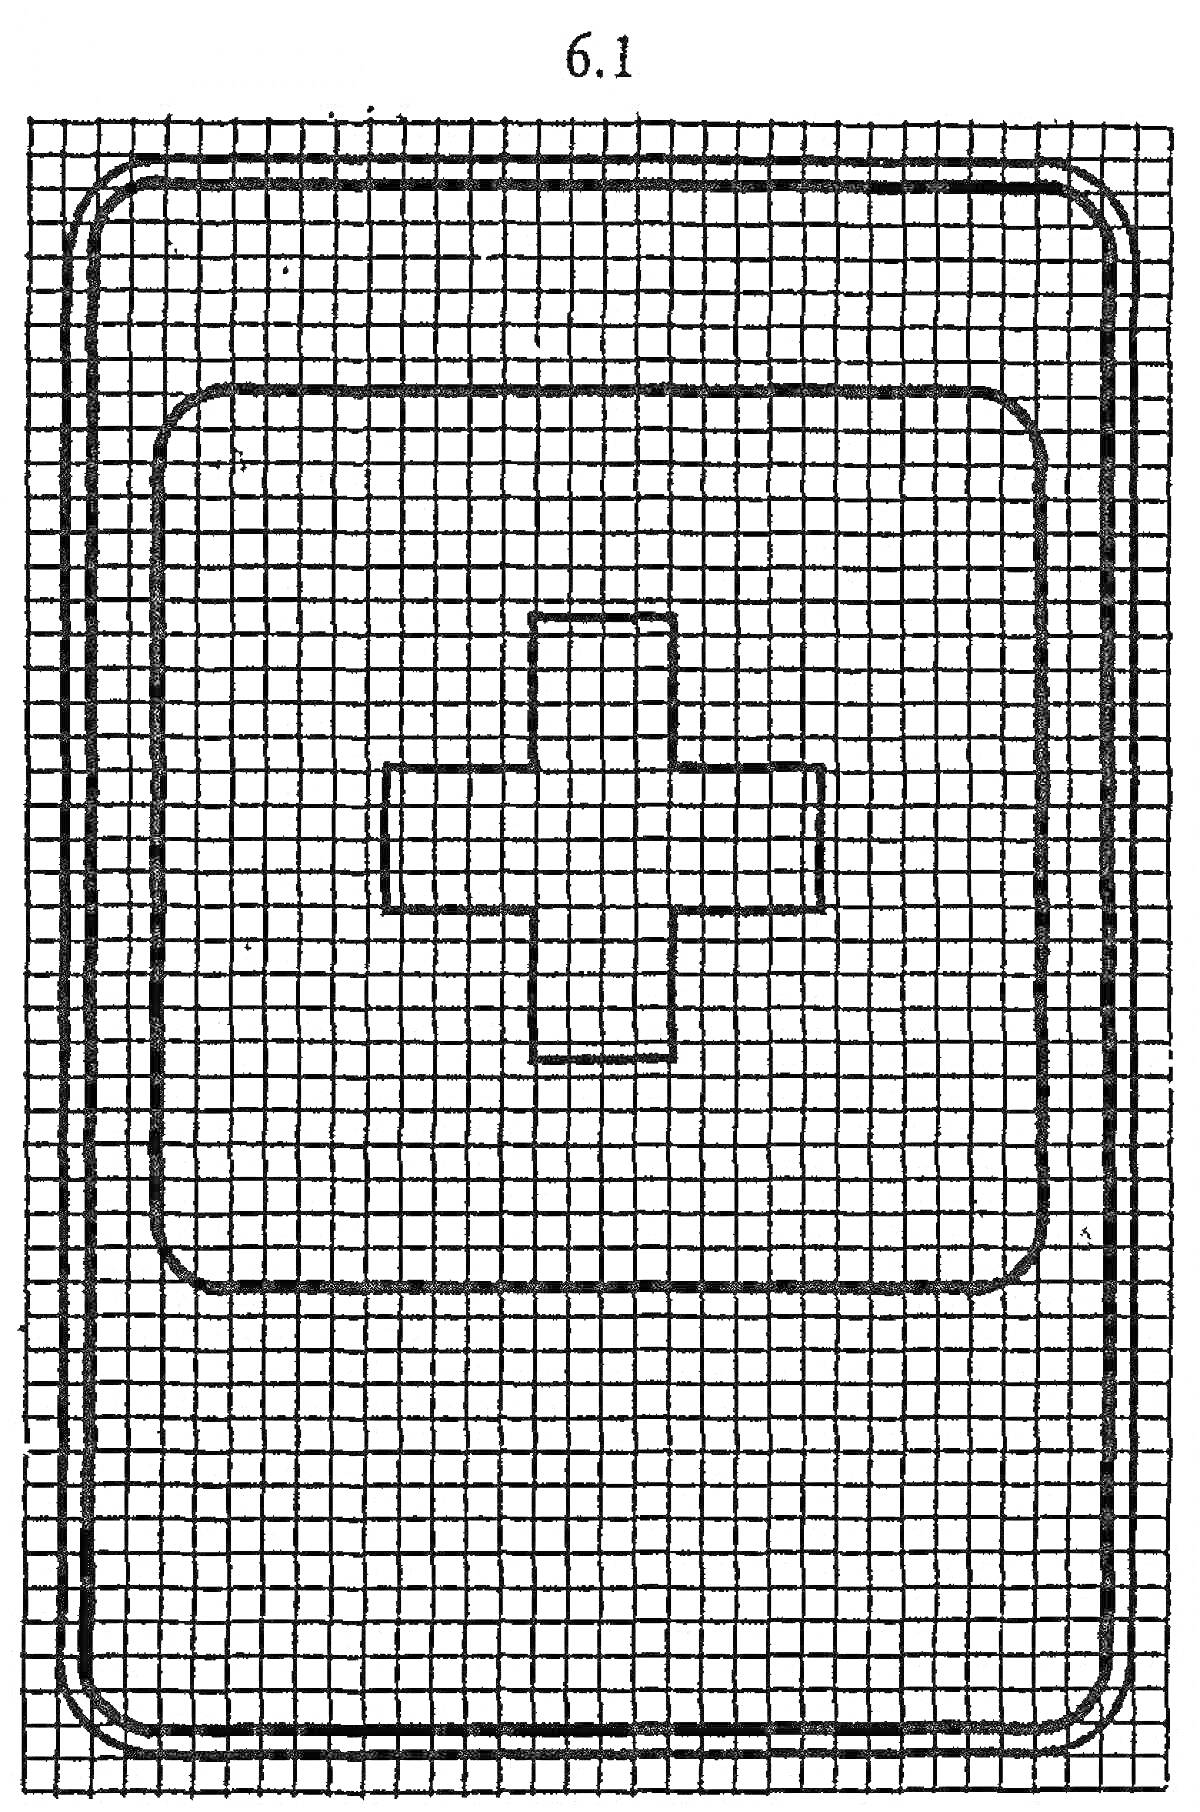 Раскраска медицинский знак, изображающий крест внутри прямоугольной рамки с закругленными краями, на решетчатом фоне.